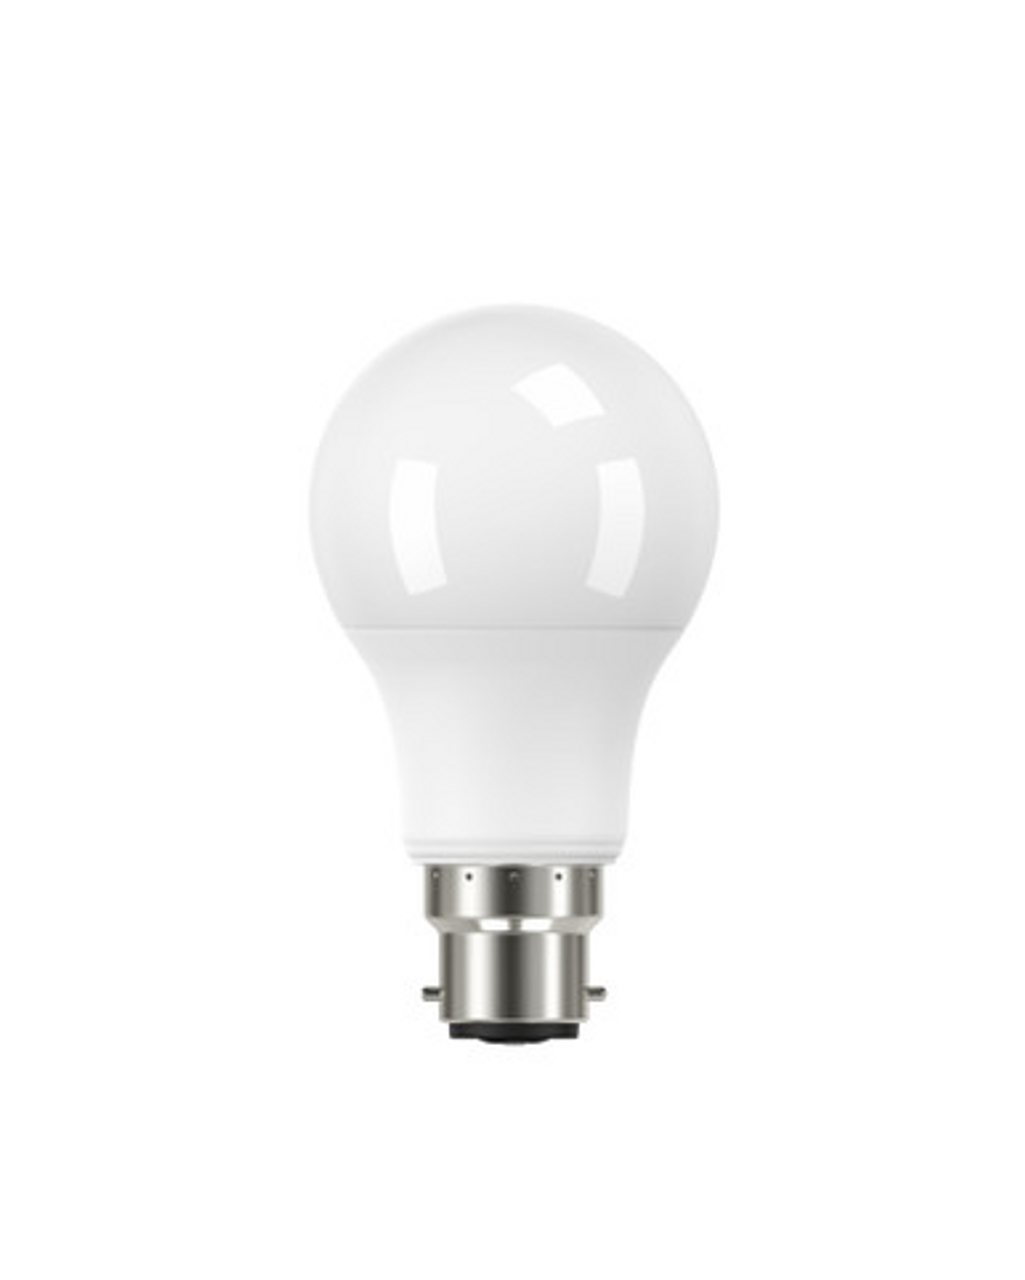 LED B22 bulb